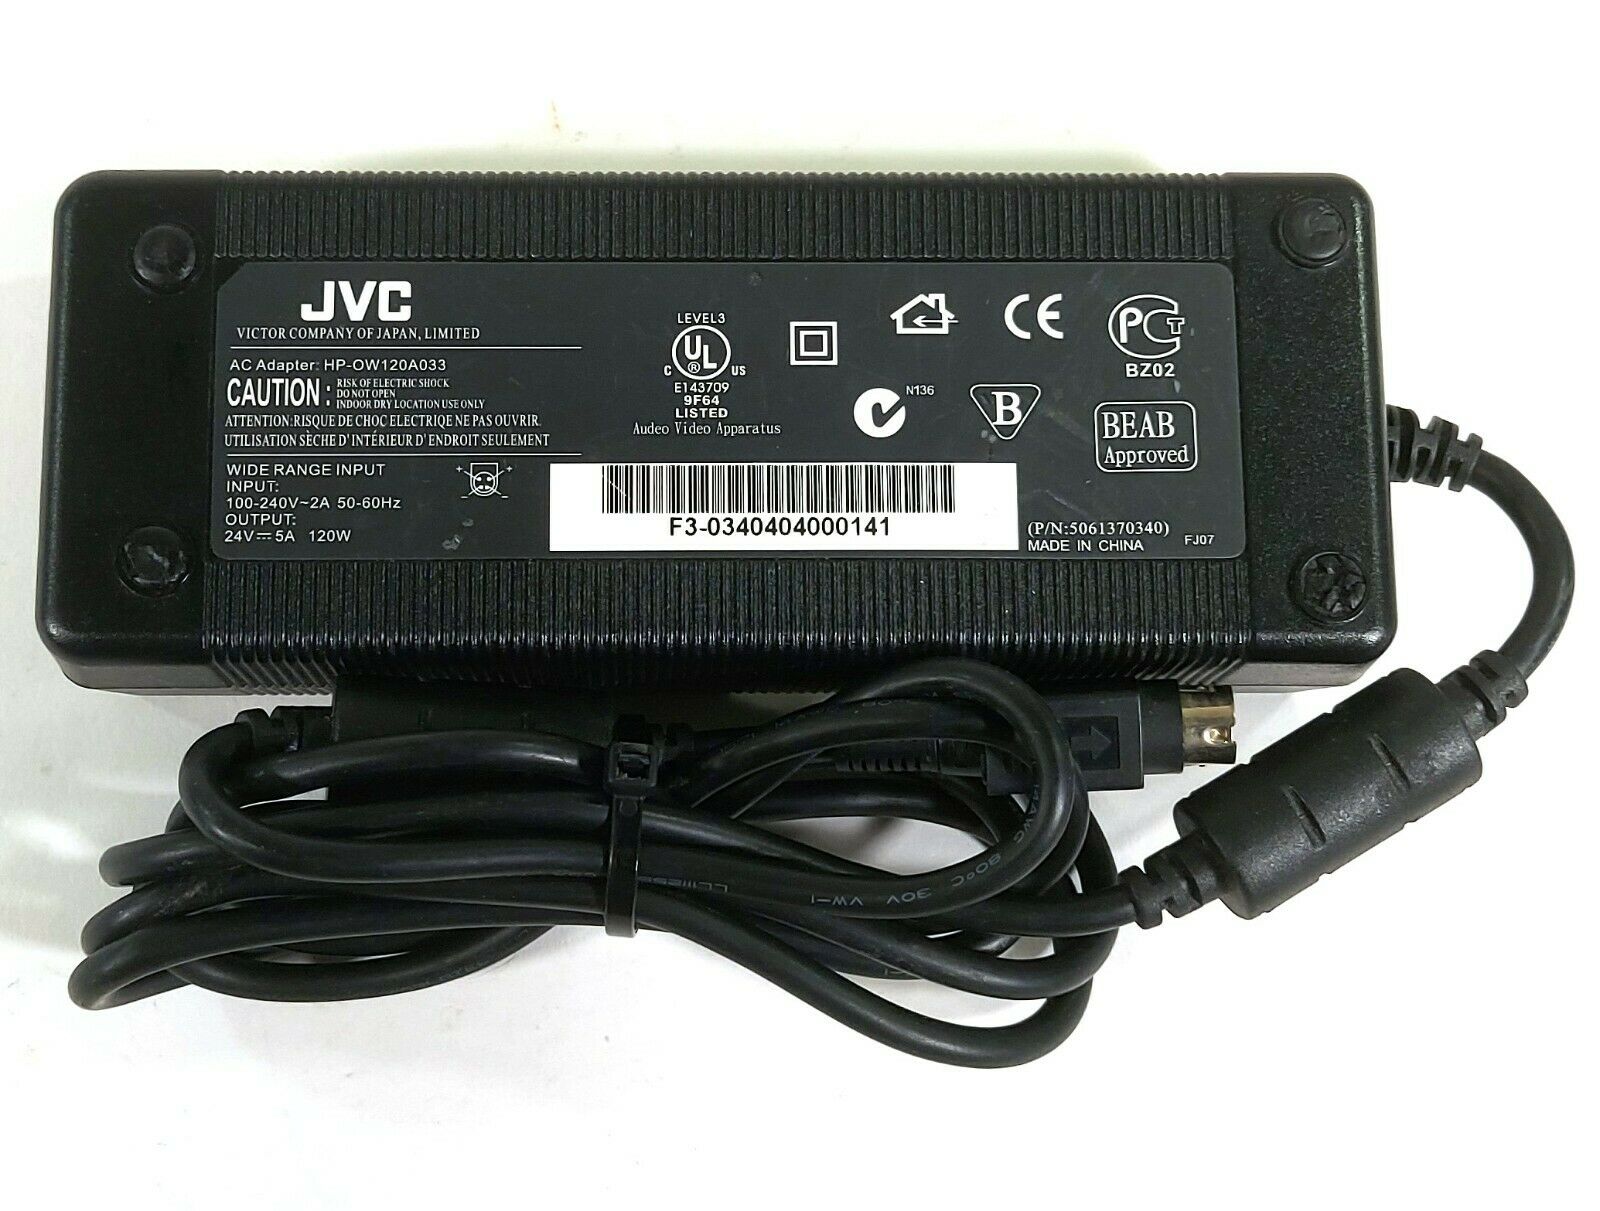 HP-OW120A033 AC/Dc Adapter 24V 5A Original Ladegerät Stromversorgung JVC Marke: JVC Herstellernummer: HP-OW120A033 Ei